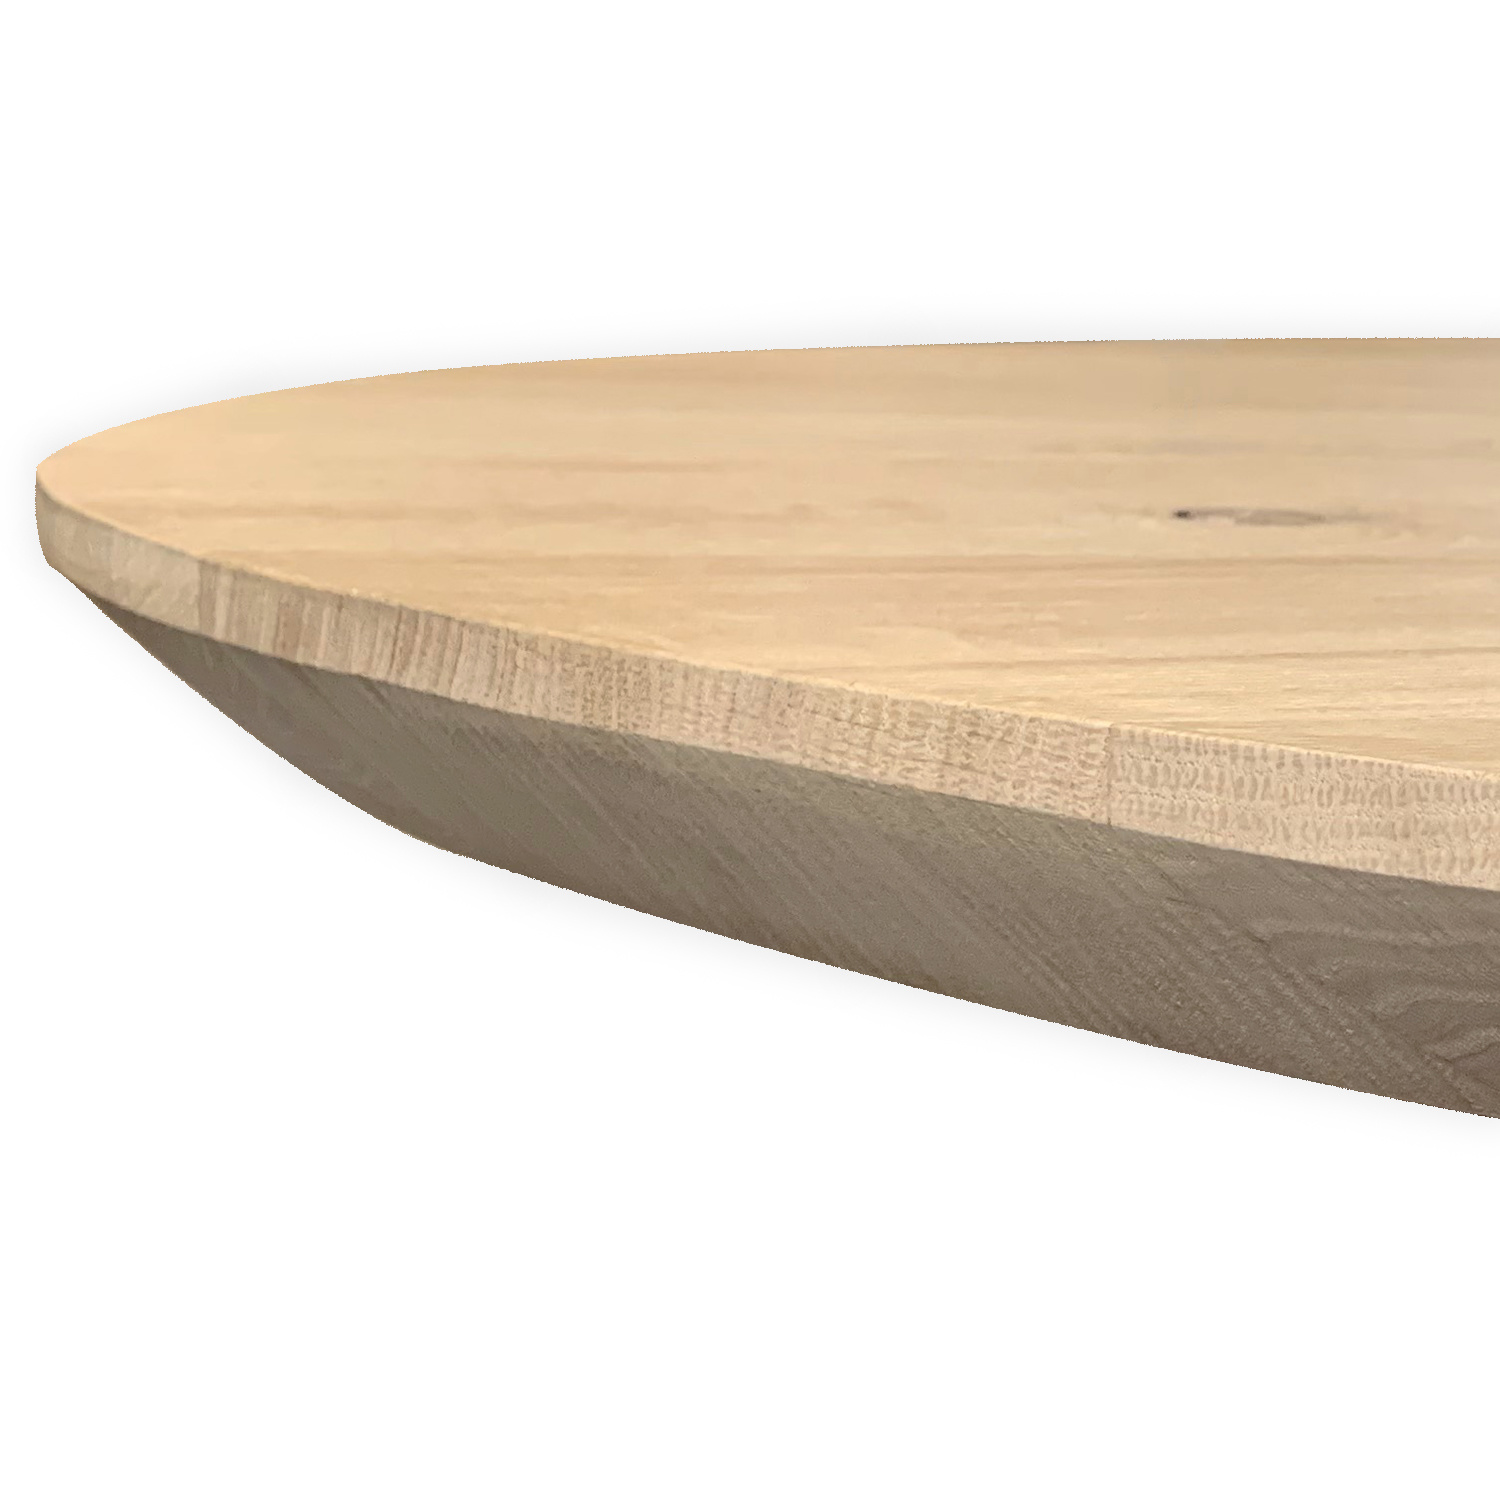  Eiken tafelblad ovaal -  VERJONGD - 4 cm dik (1-laag) - optioneel geborsteld - rustiek Europees eikenhout - verlijmd kd 10-12% - met verjongde / afgeschuinde rand